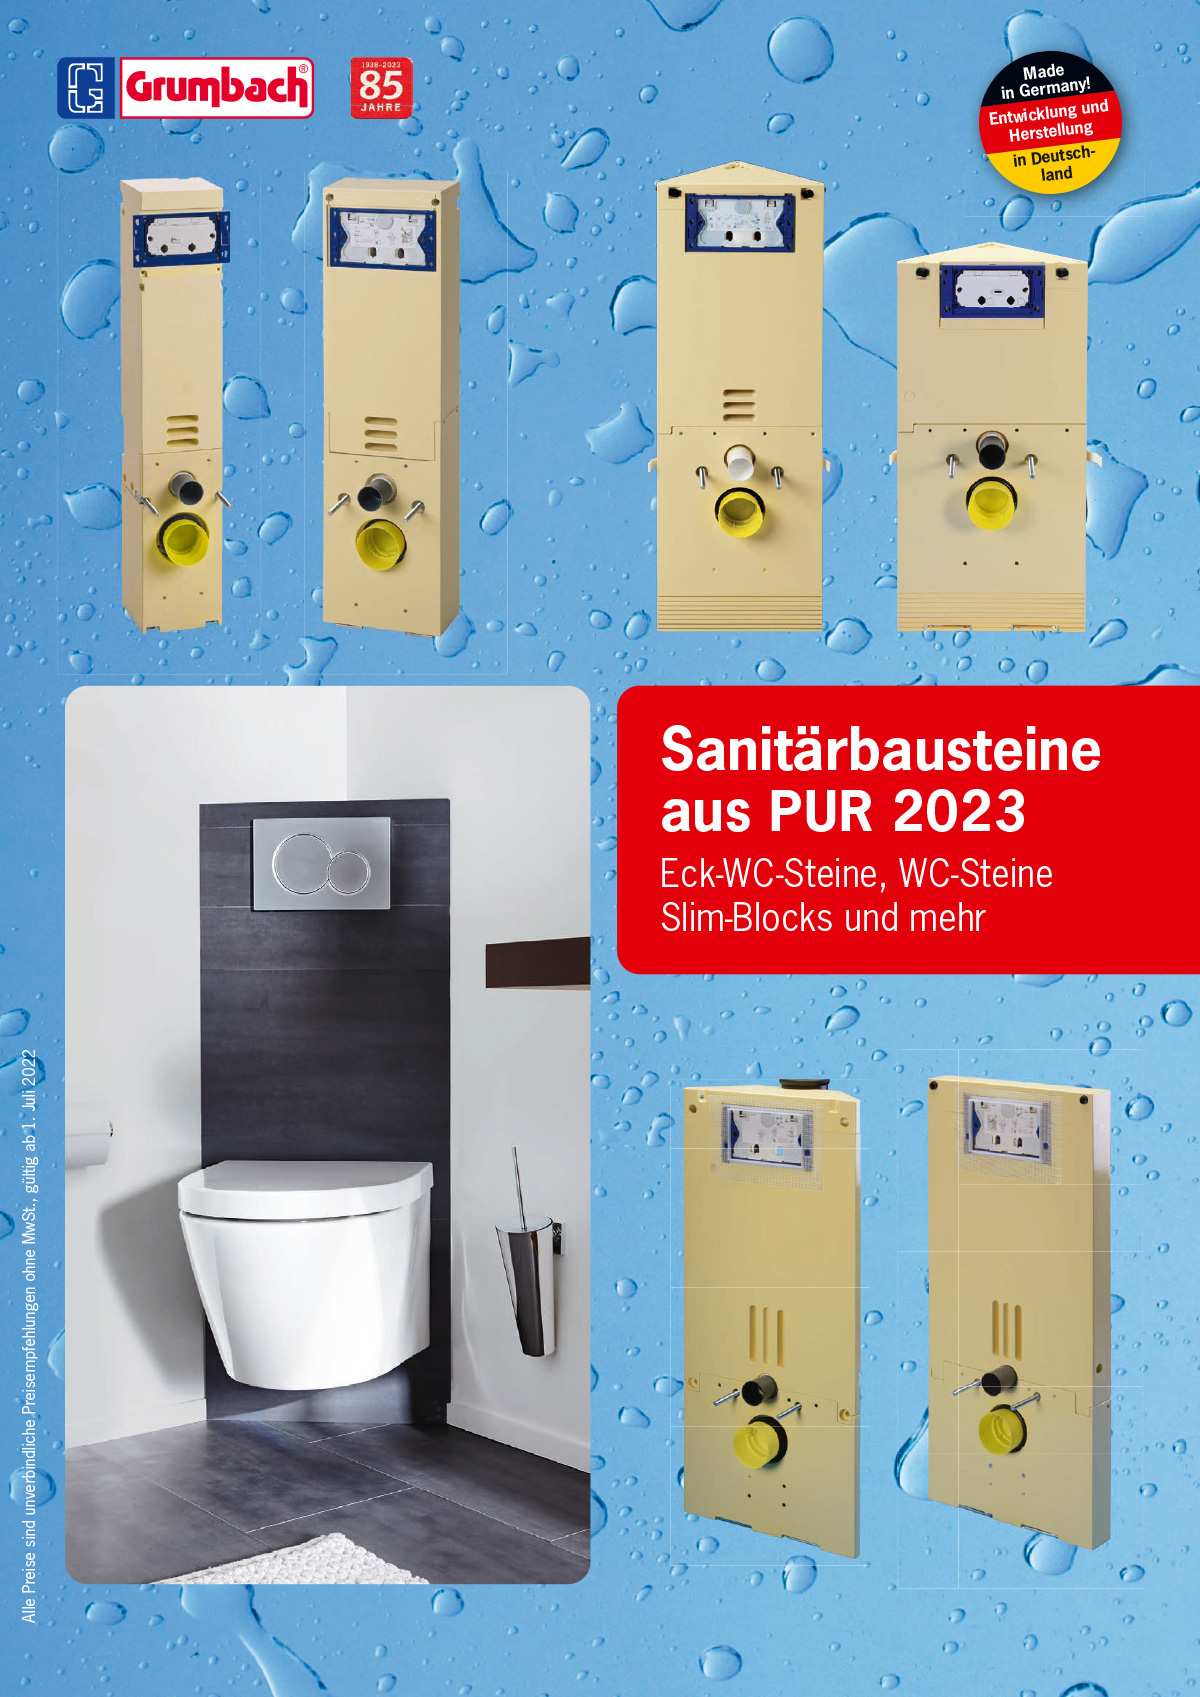 Titel Grumbach-Sanitaerbausteine 2022